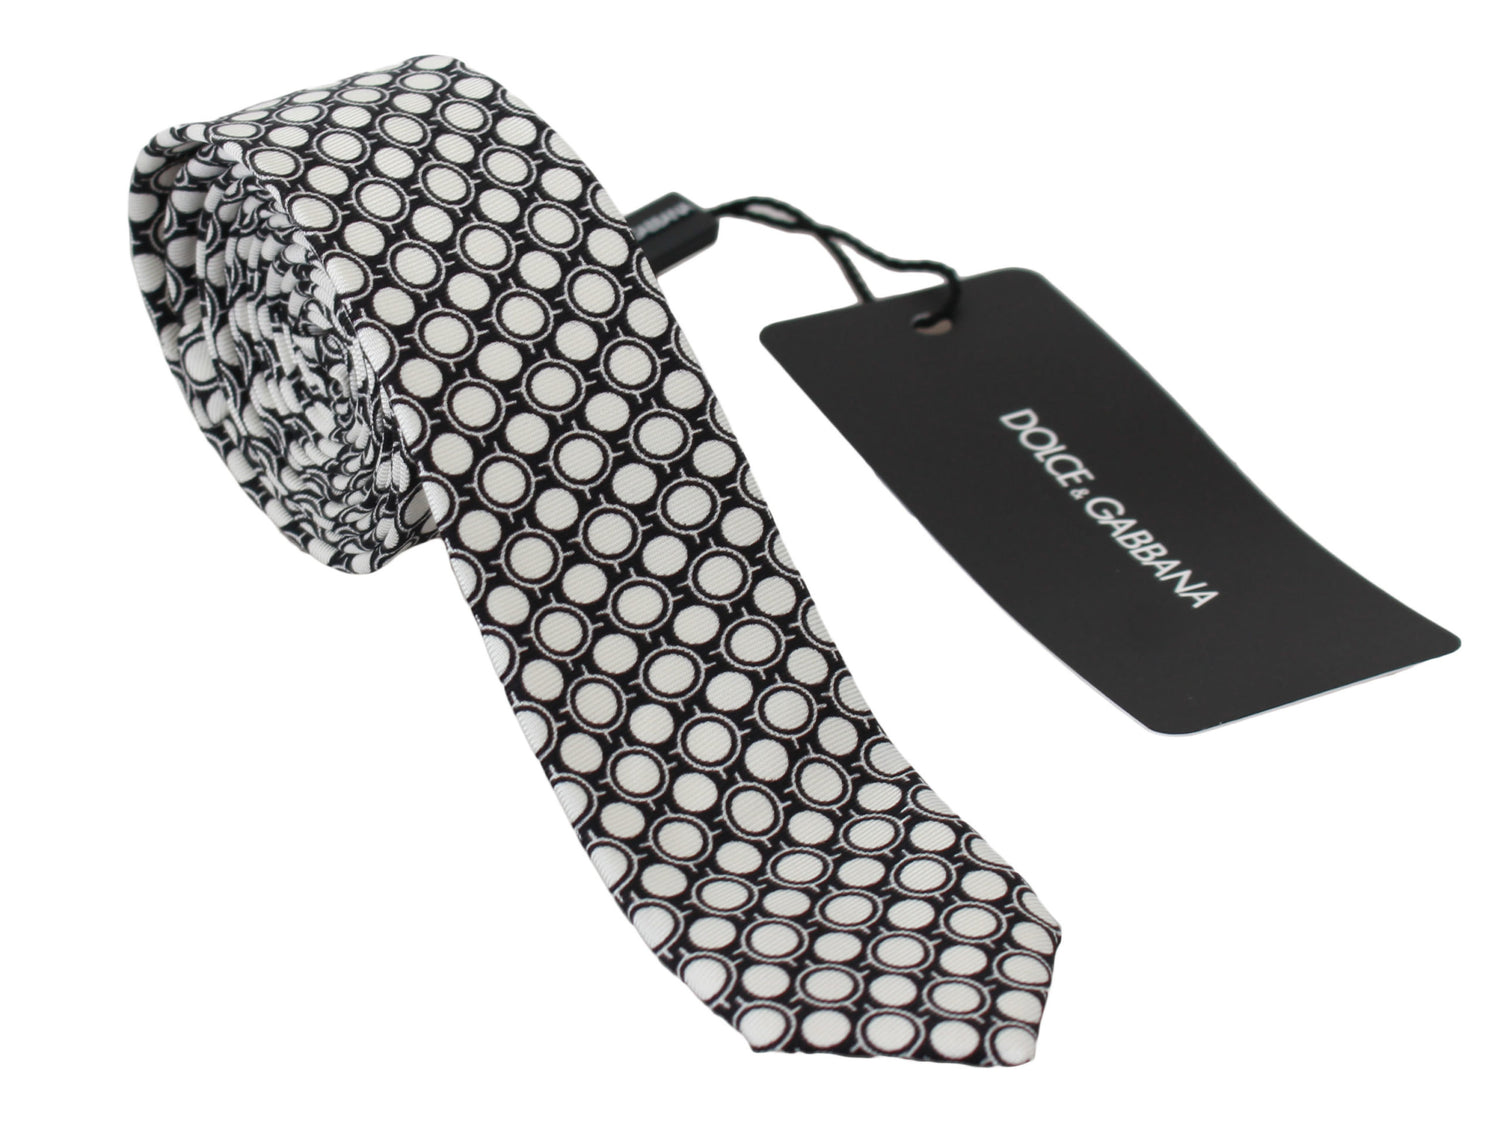 Black White Prtinted 100% Silk Necktie